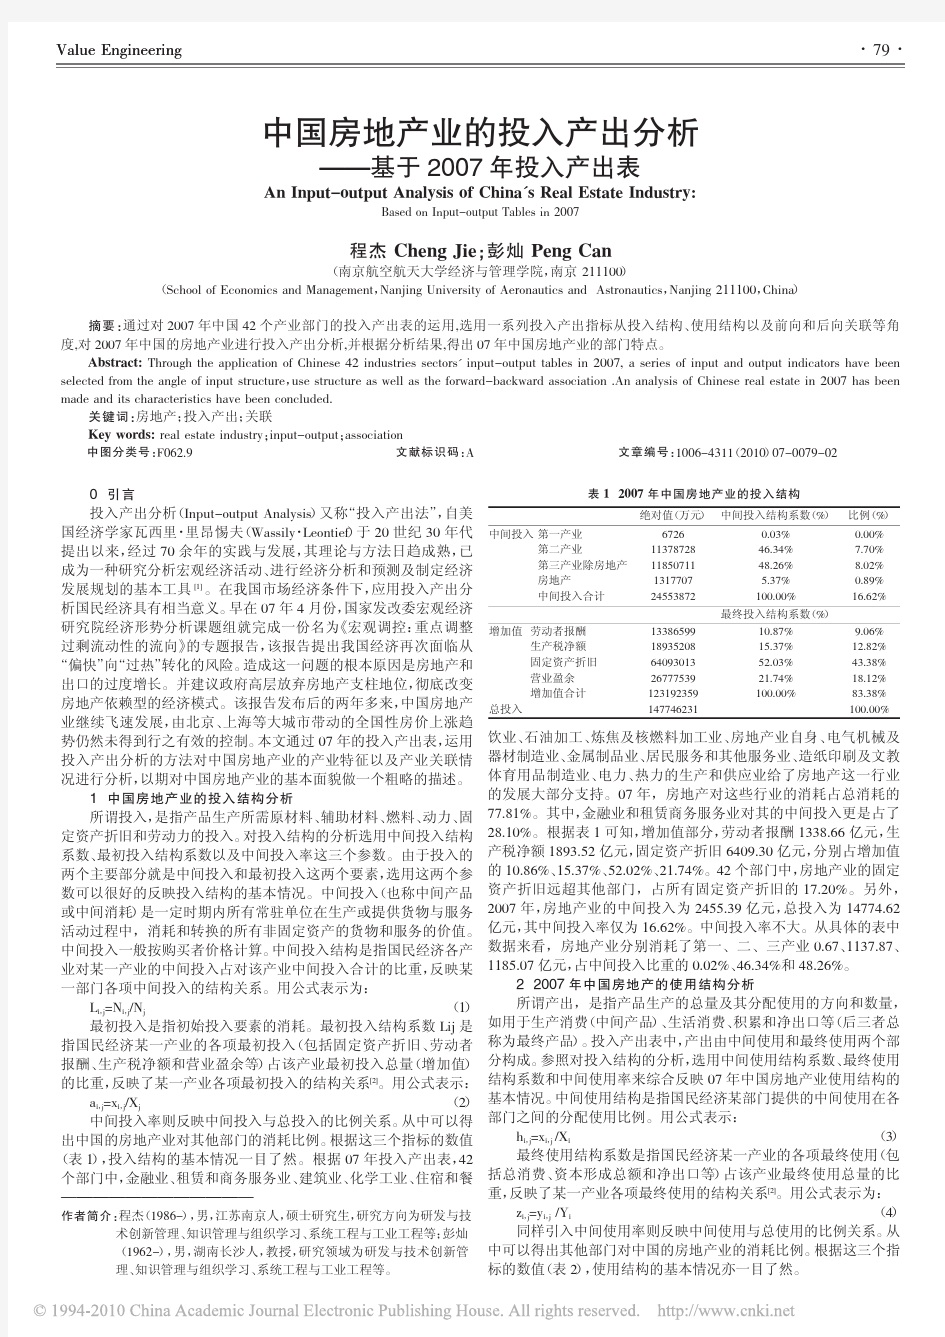 中国房地产业的投入产出分析_基于2007年投入产出表